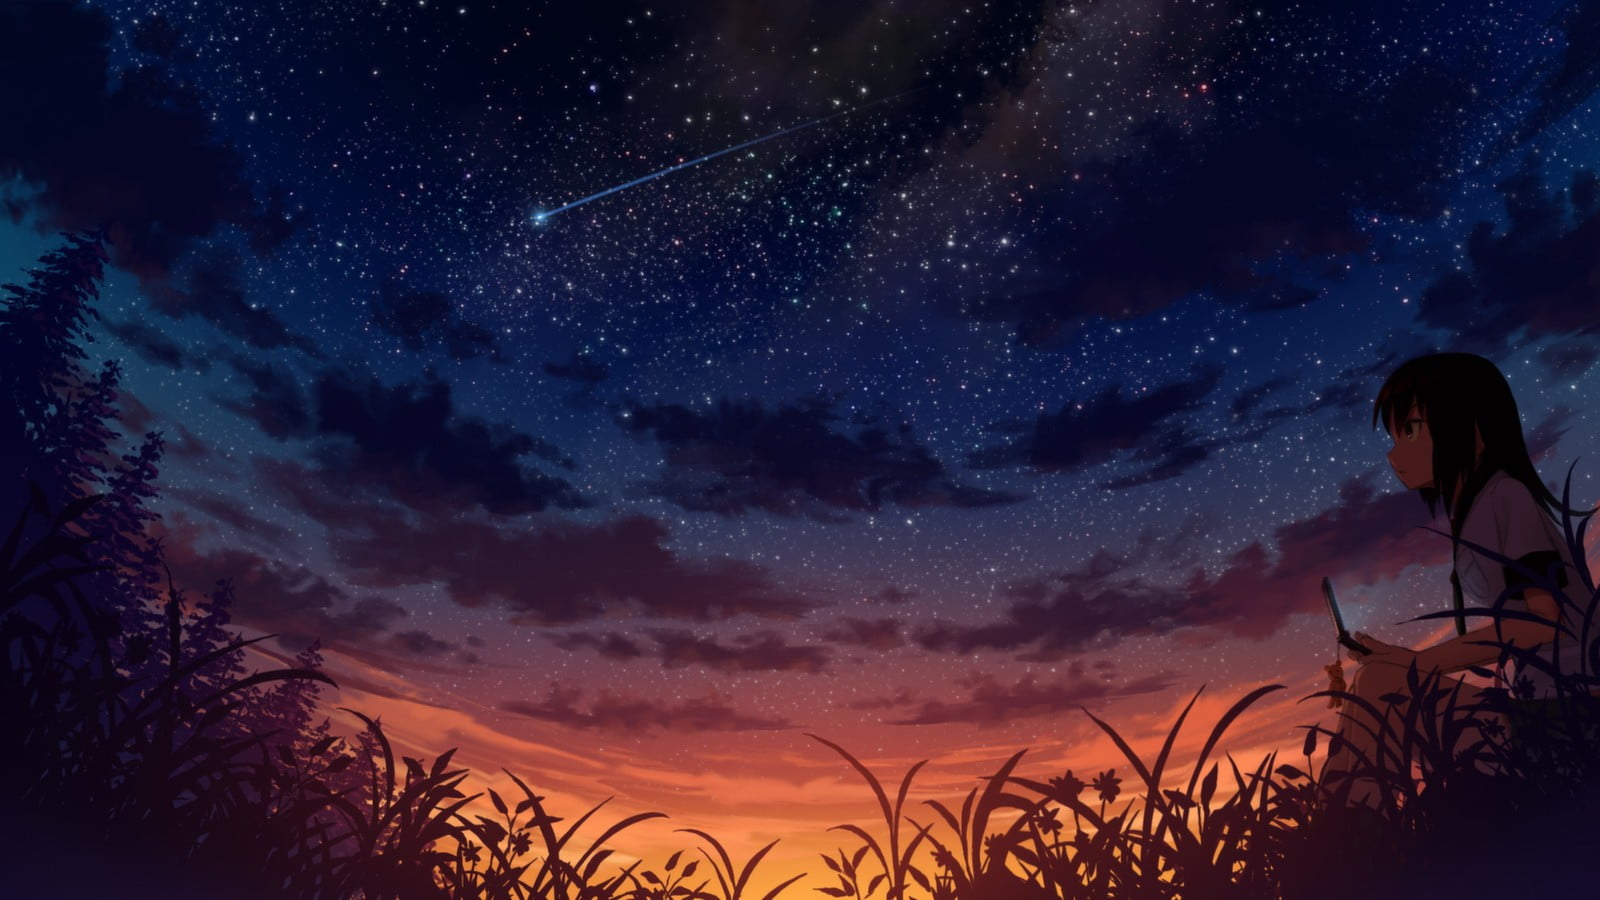 Night Sky With Shooting Star On Display Anime Digital Wallpaper Hd